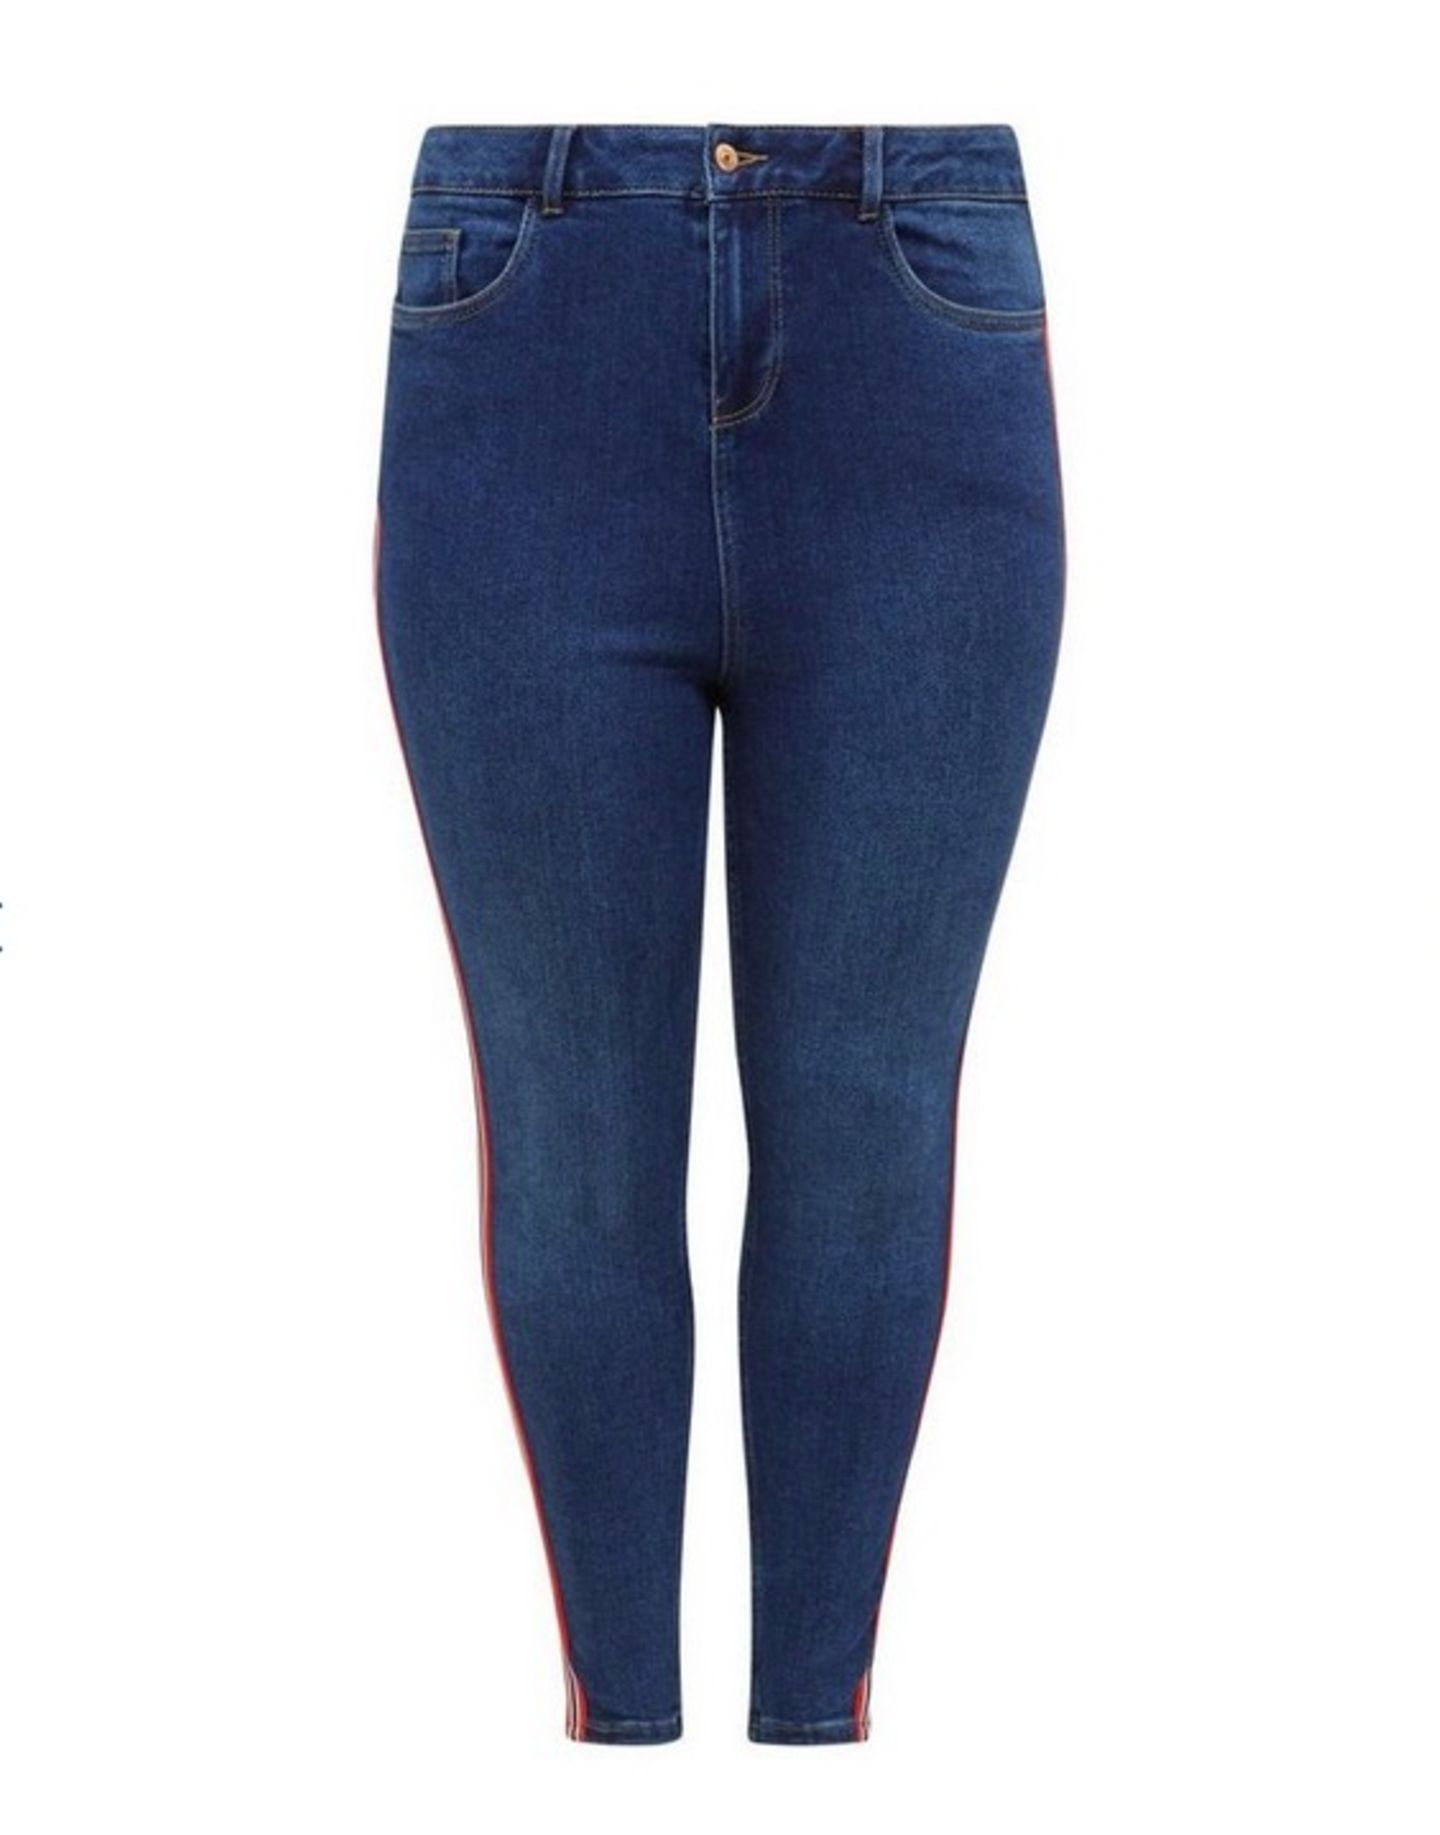 Eng geschnittene Jeans mit trendigem Seitenstreifen. Erhältlich bis Größe 50 über New Look, um 40 Euro.